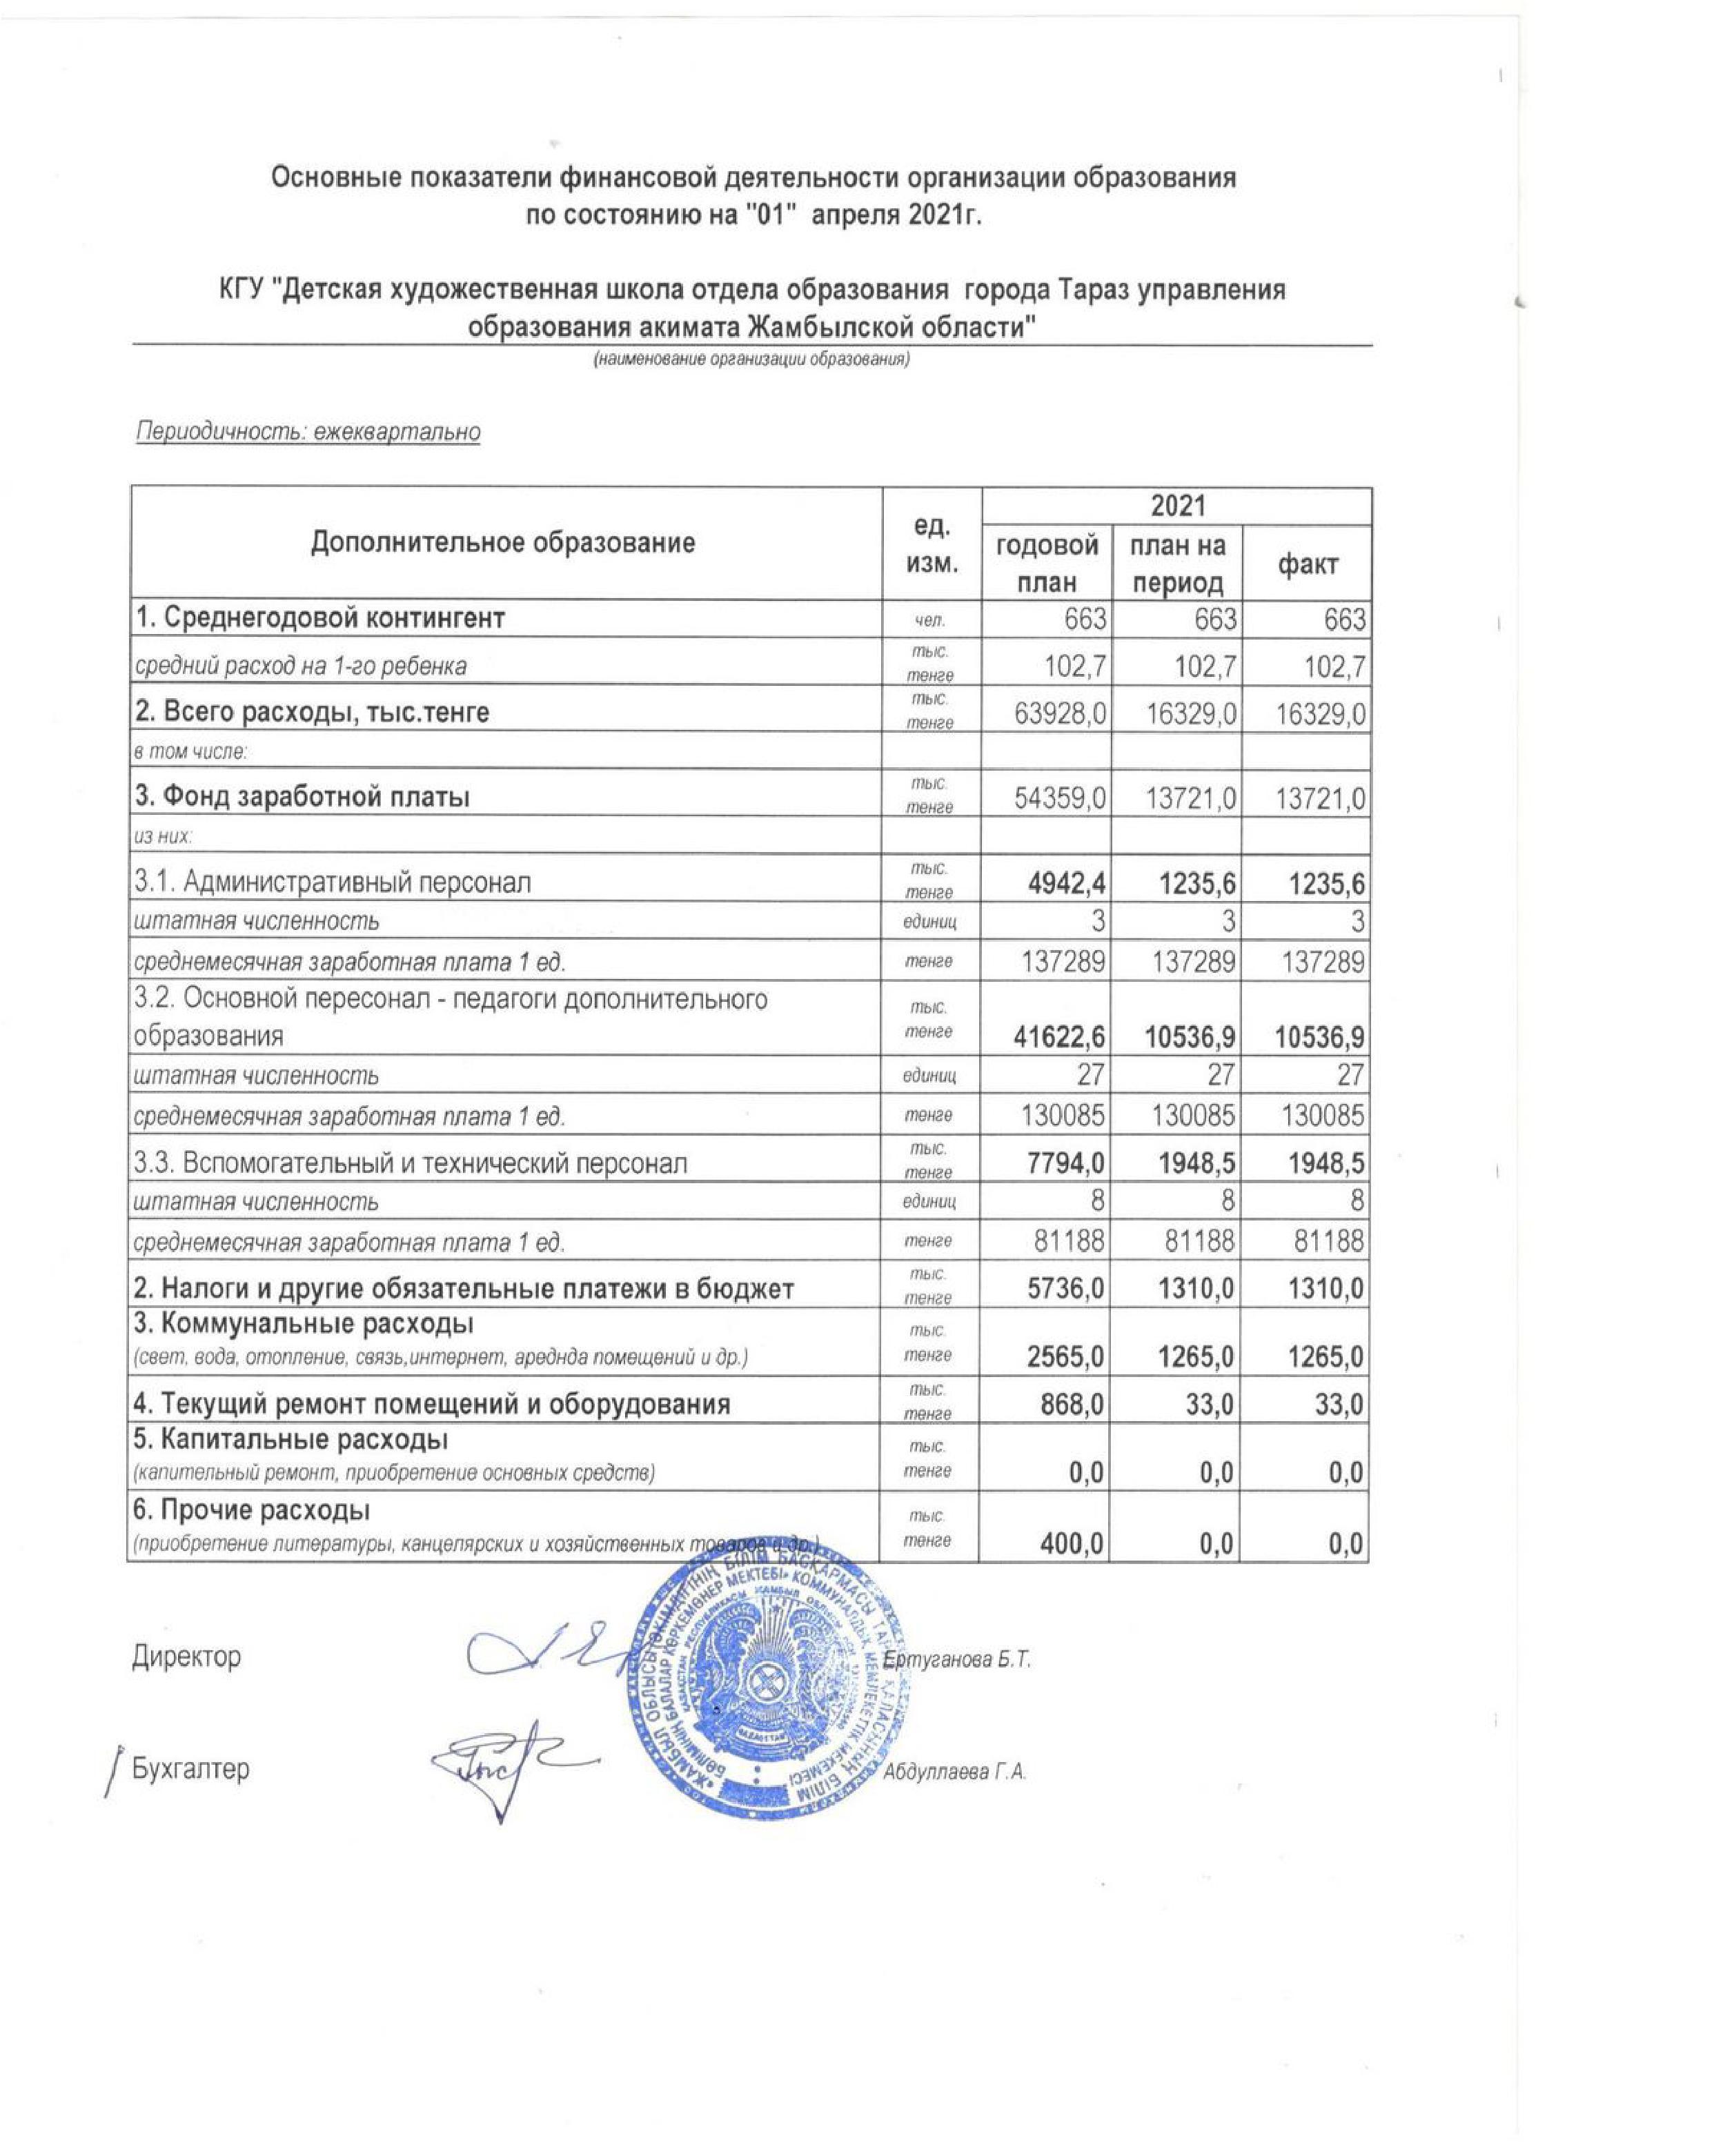 Основные показатели финансовой деятельности на 01 апреля 2021 г.